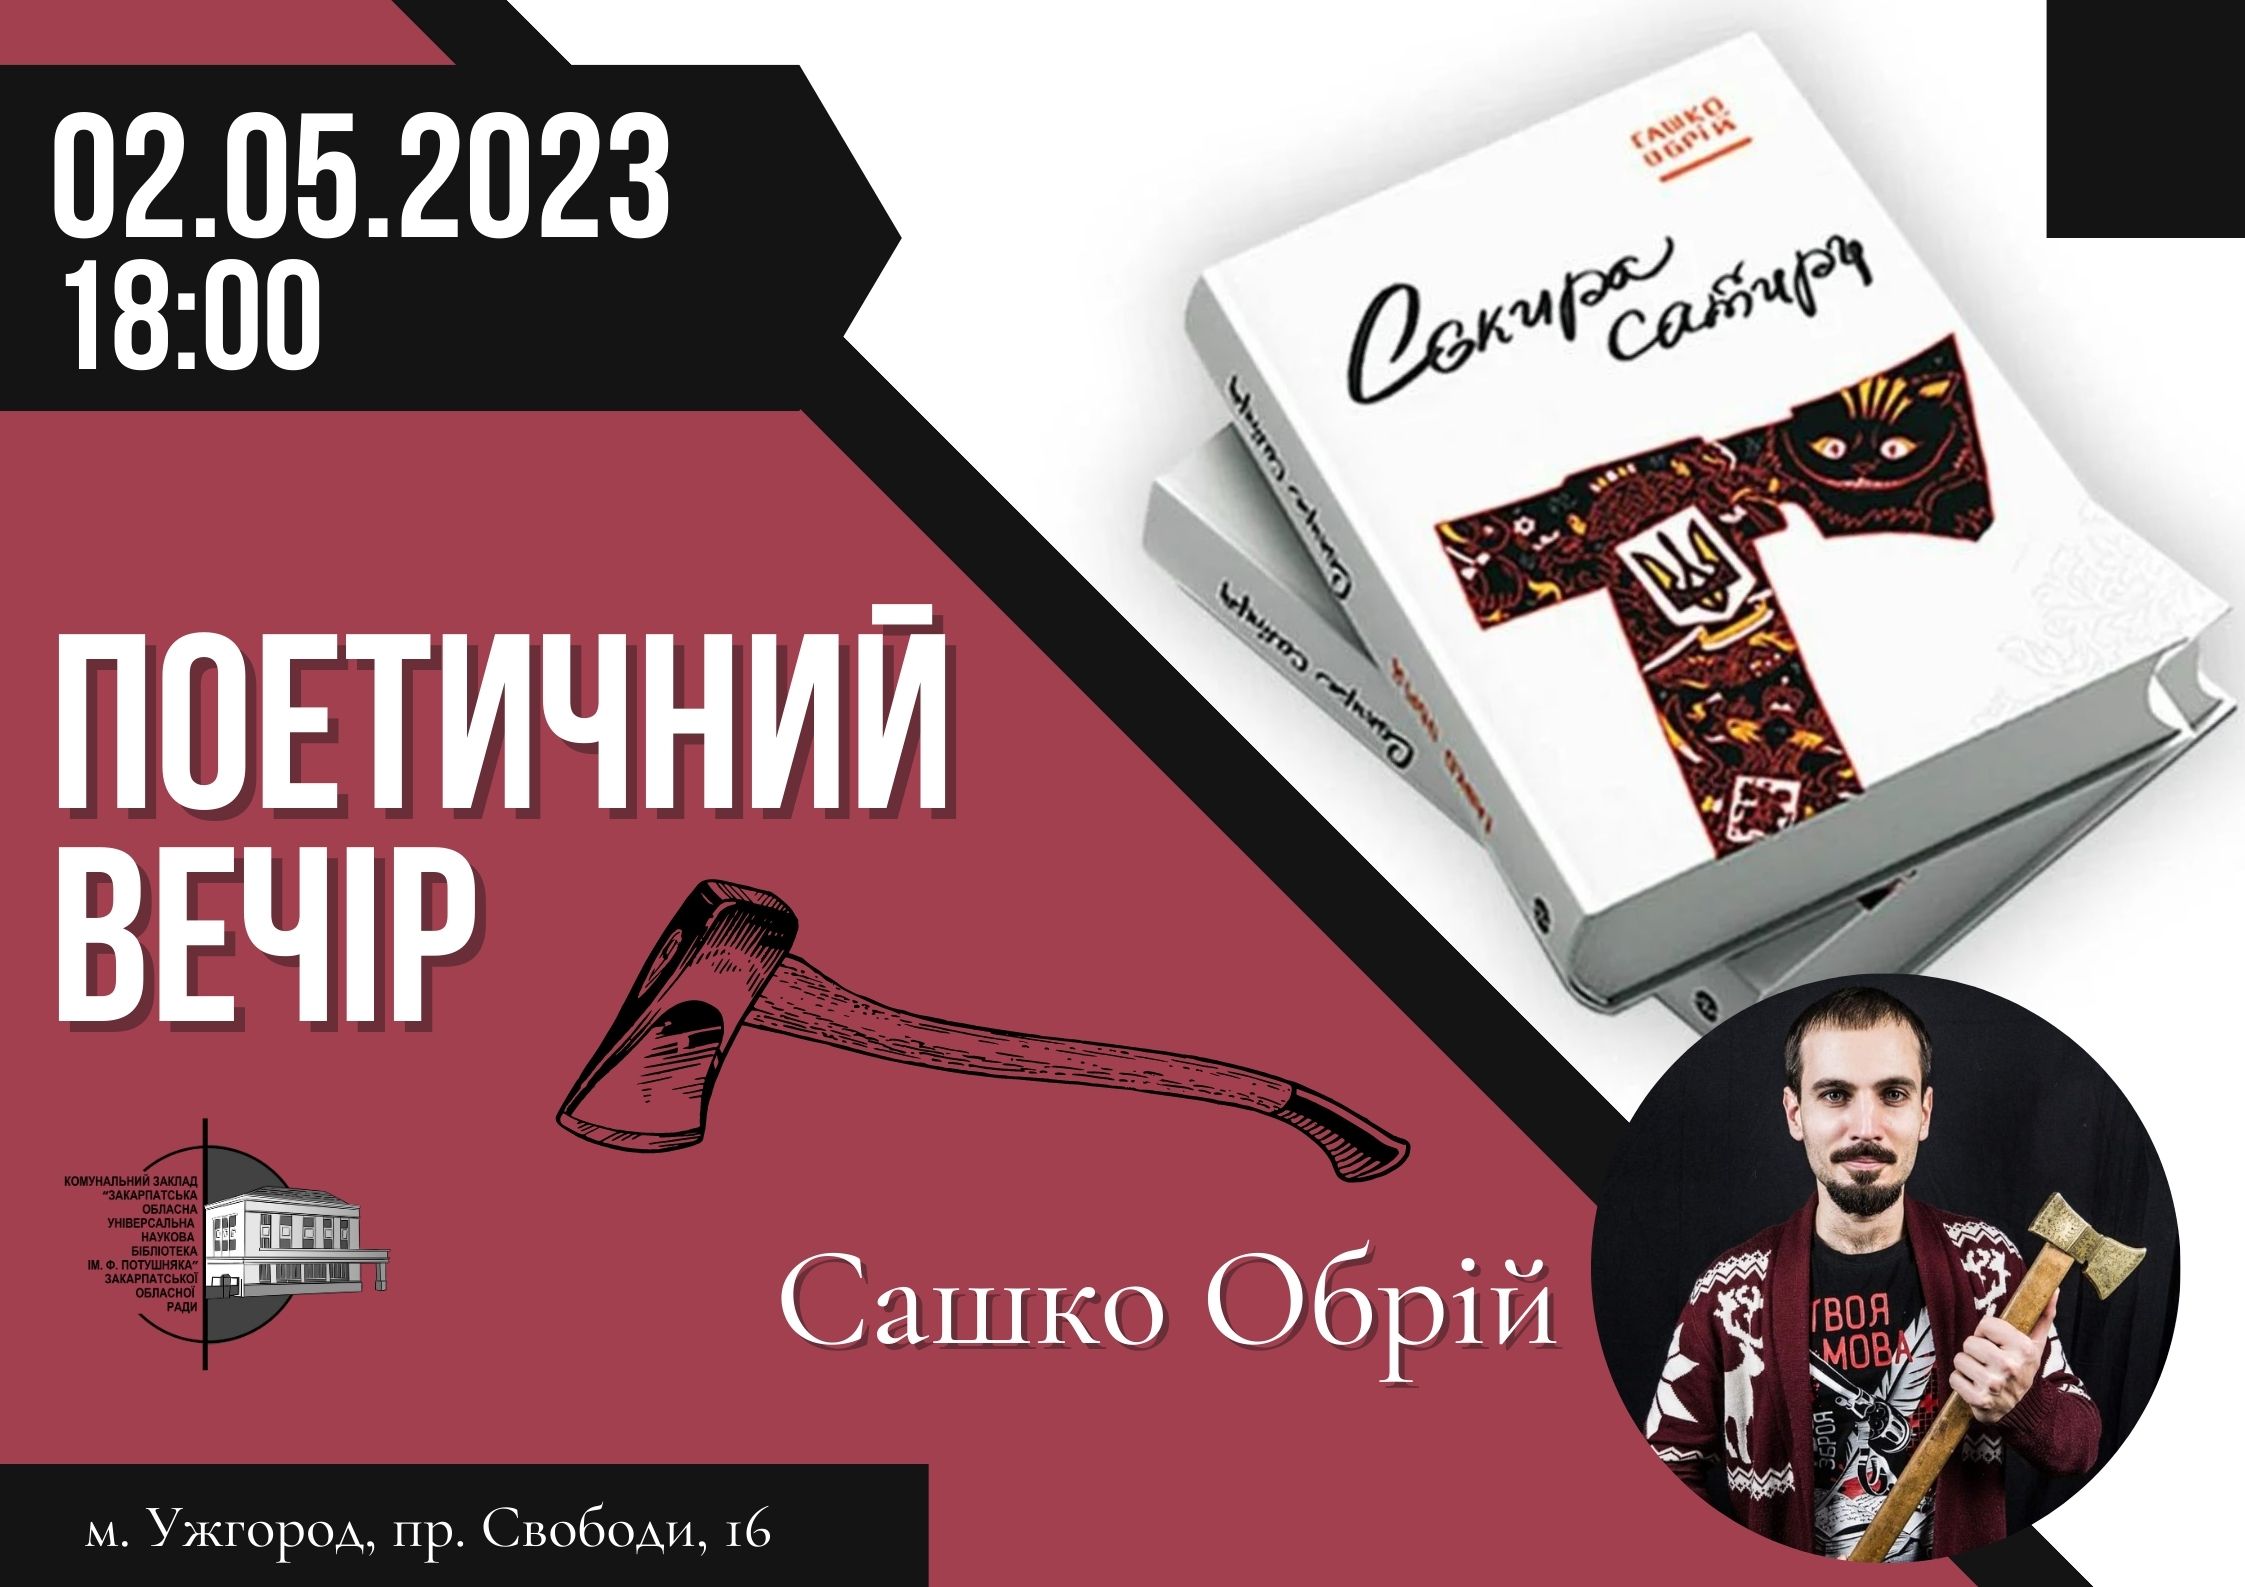 В Ужгороді відбудеться творчий вечір Сашка Обрія та презентація його поетичної збірки "Сокира сатири"